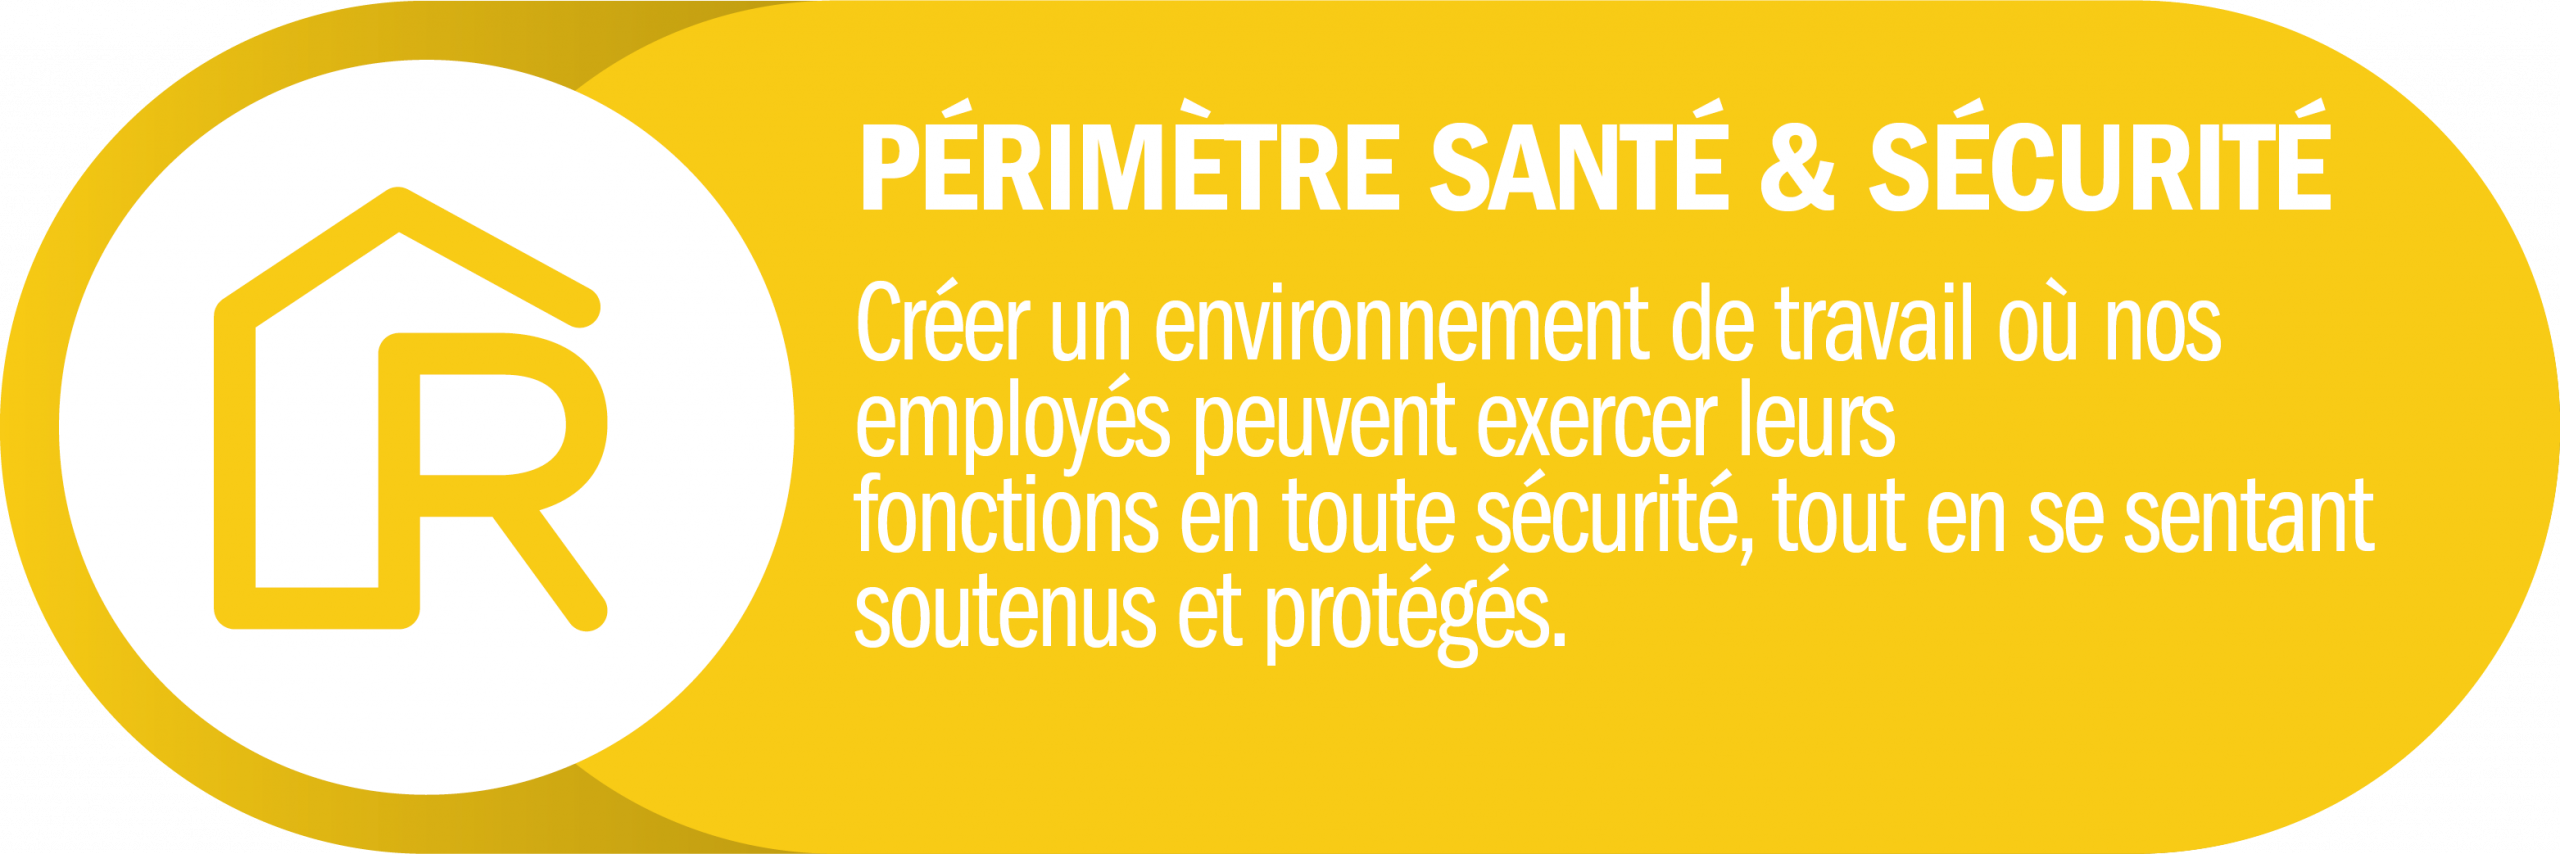 UNE AMBITION SUR LA SANTÉ & LA SÉCURITÉ “Créer un environnement de travail où nos employés peuvent exercer leurs fonctions en toute sécurité, tout en se sentant soutenus et protégés.”